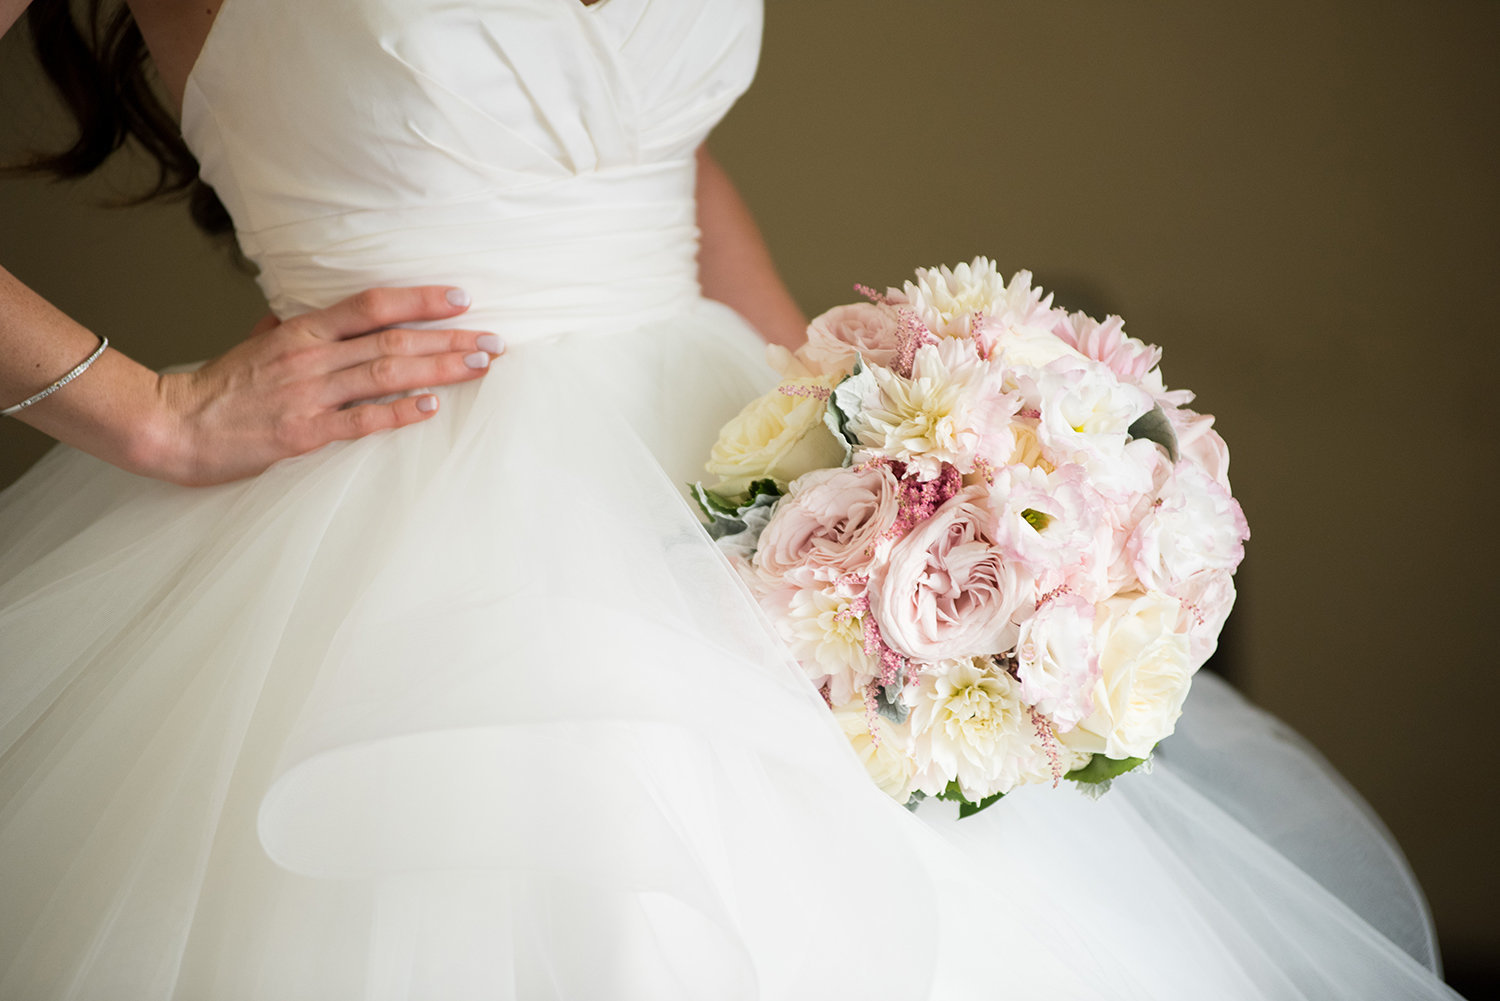 Close up detail photo of a bride's bouquet